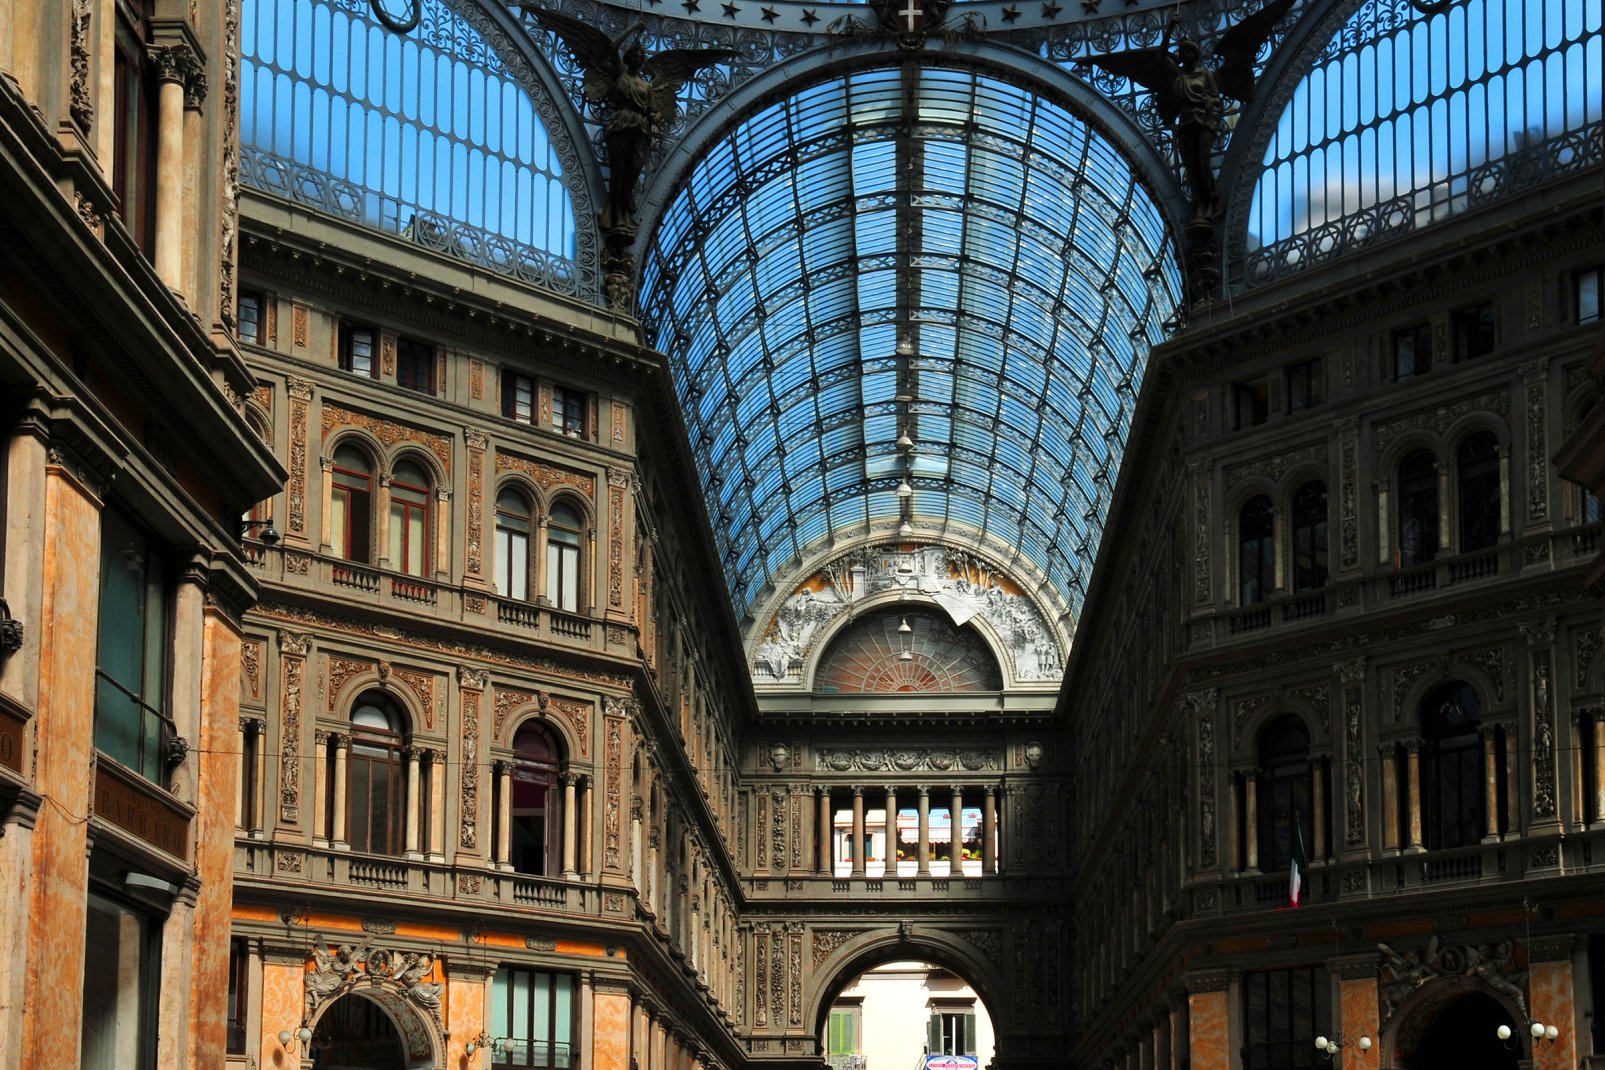 Der Dom der Galerie Umberto I. ragt 56,7 m in die Höhe, sein achteckiges Grundfundament misst 36,2 m.